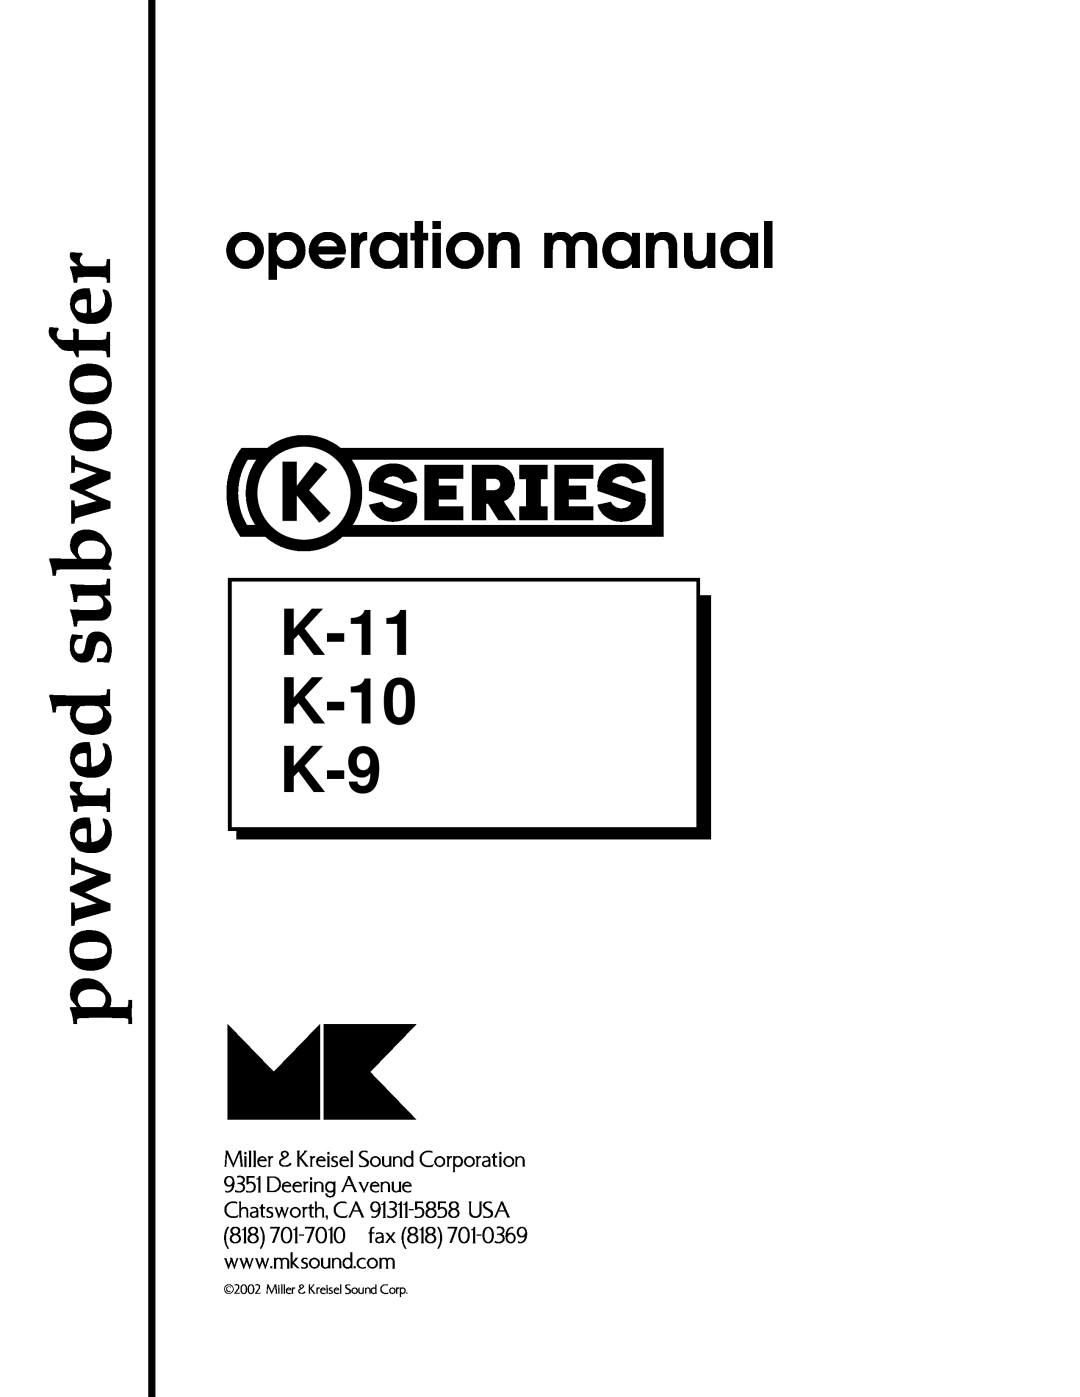 MK Sound operation manual powered subwoofer, K-11 K-10 K-9, Miller & Kreisel Sound Corporation 